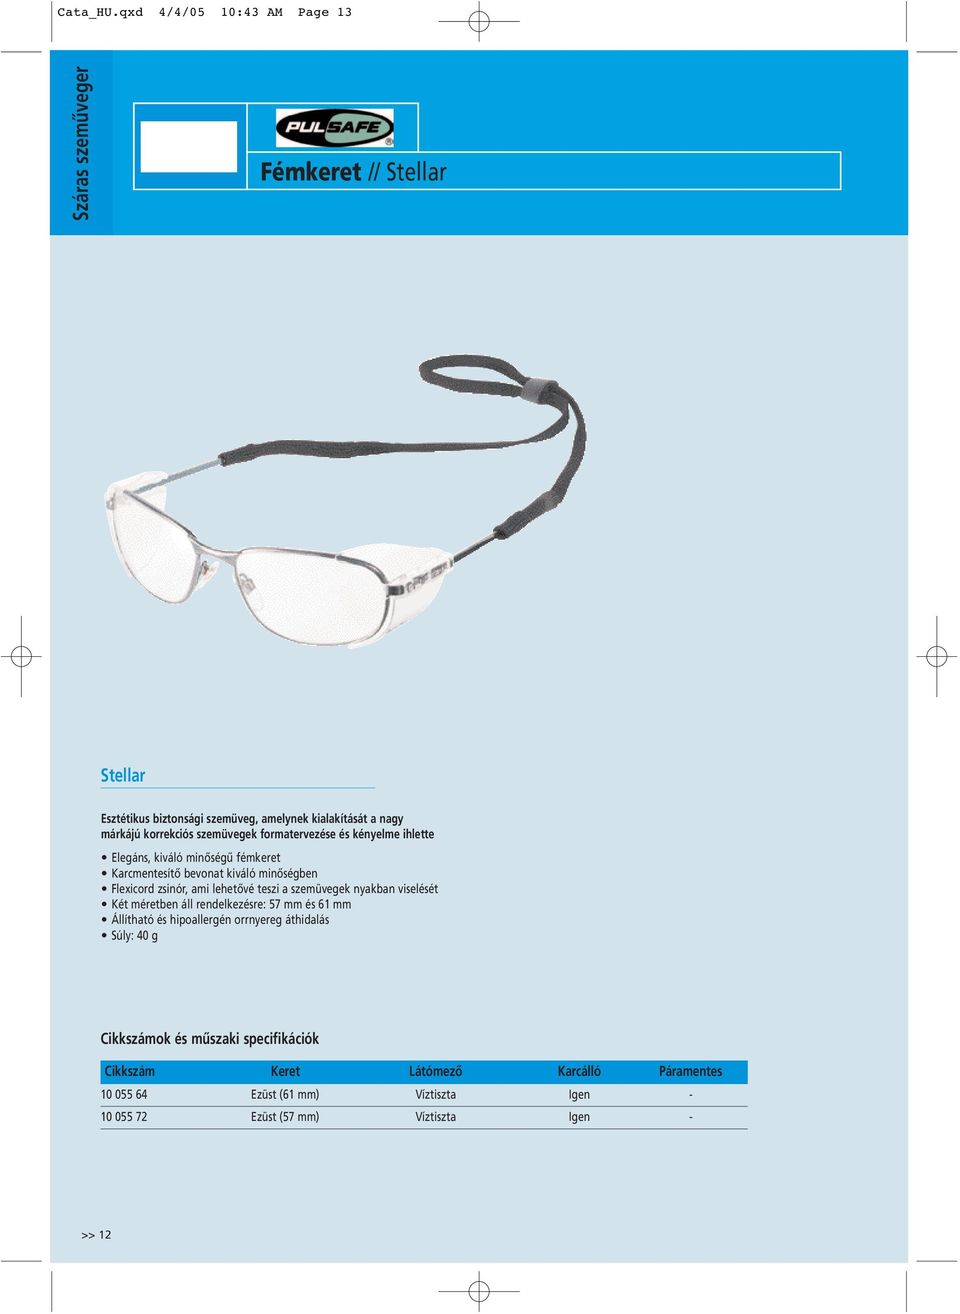 korrekciós szemüvegek formatervezése és kényelme ihlette Elegáns, kiváló minőségű fémkeret Karcmentesítő bevonat kiváló minőségben Flexicord